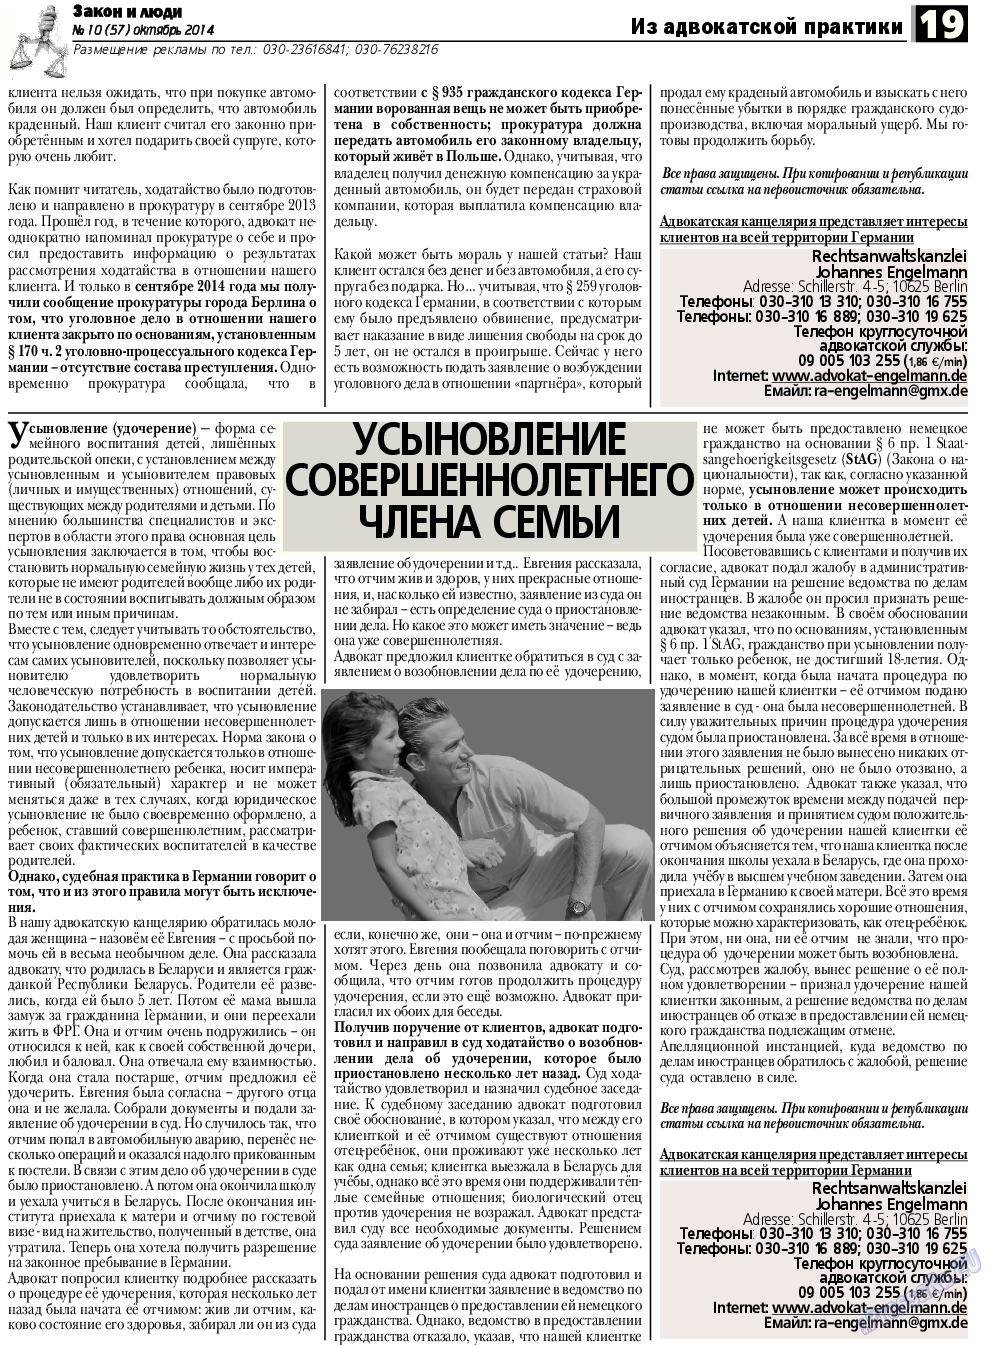 Закон и люди, газета. 2014 №10 стр.19